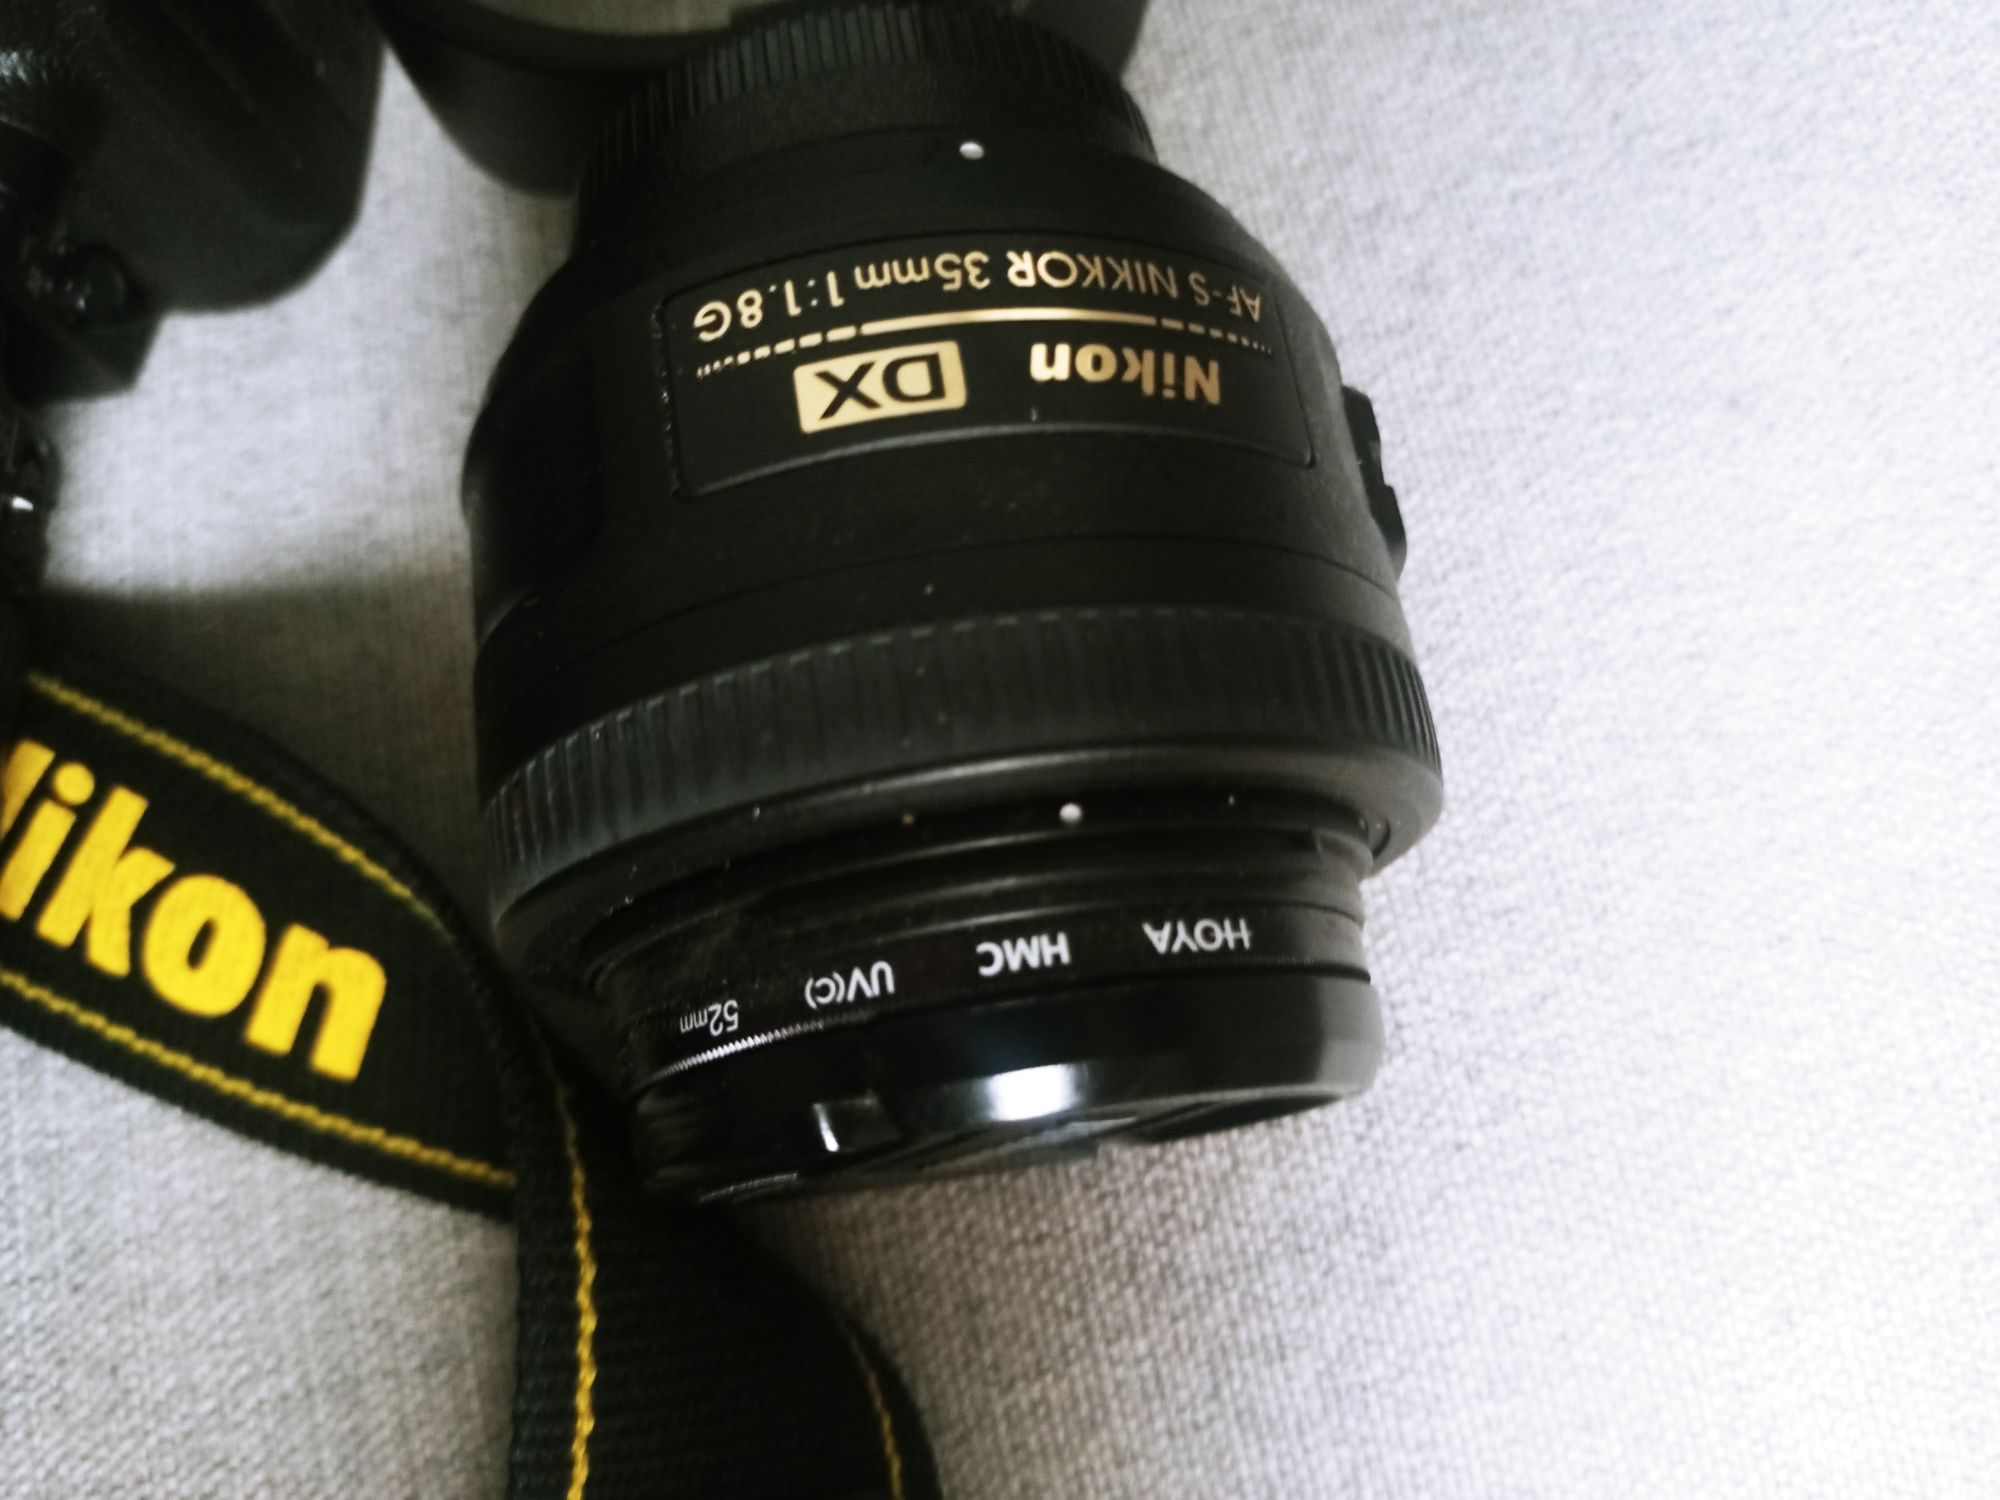 Lustrzanka Nikon D90 dwa obiektywy